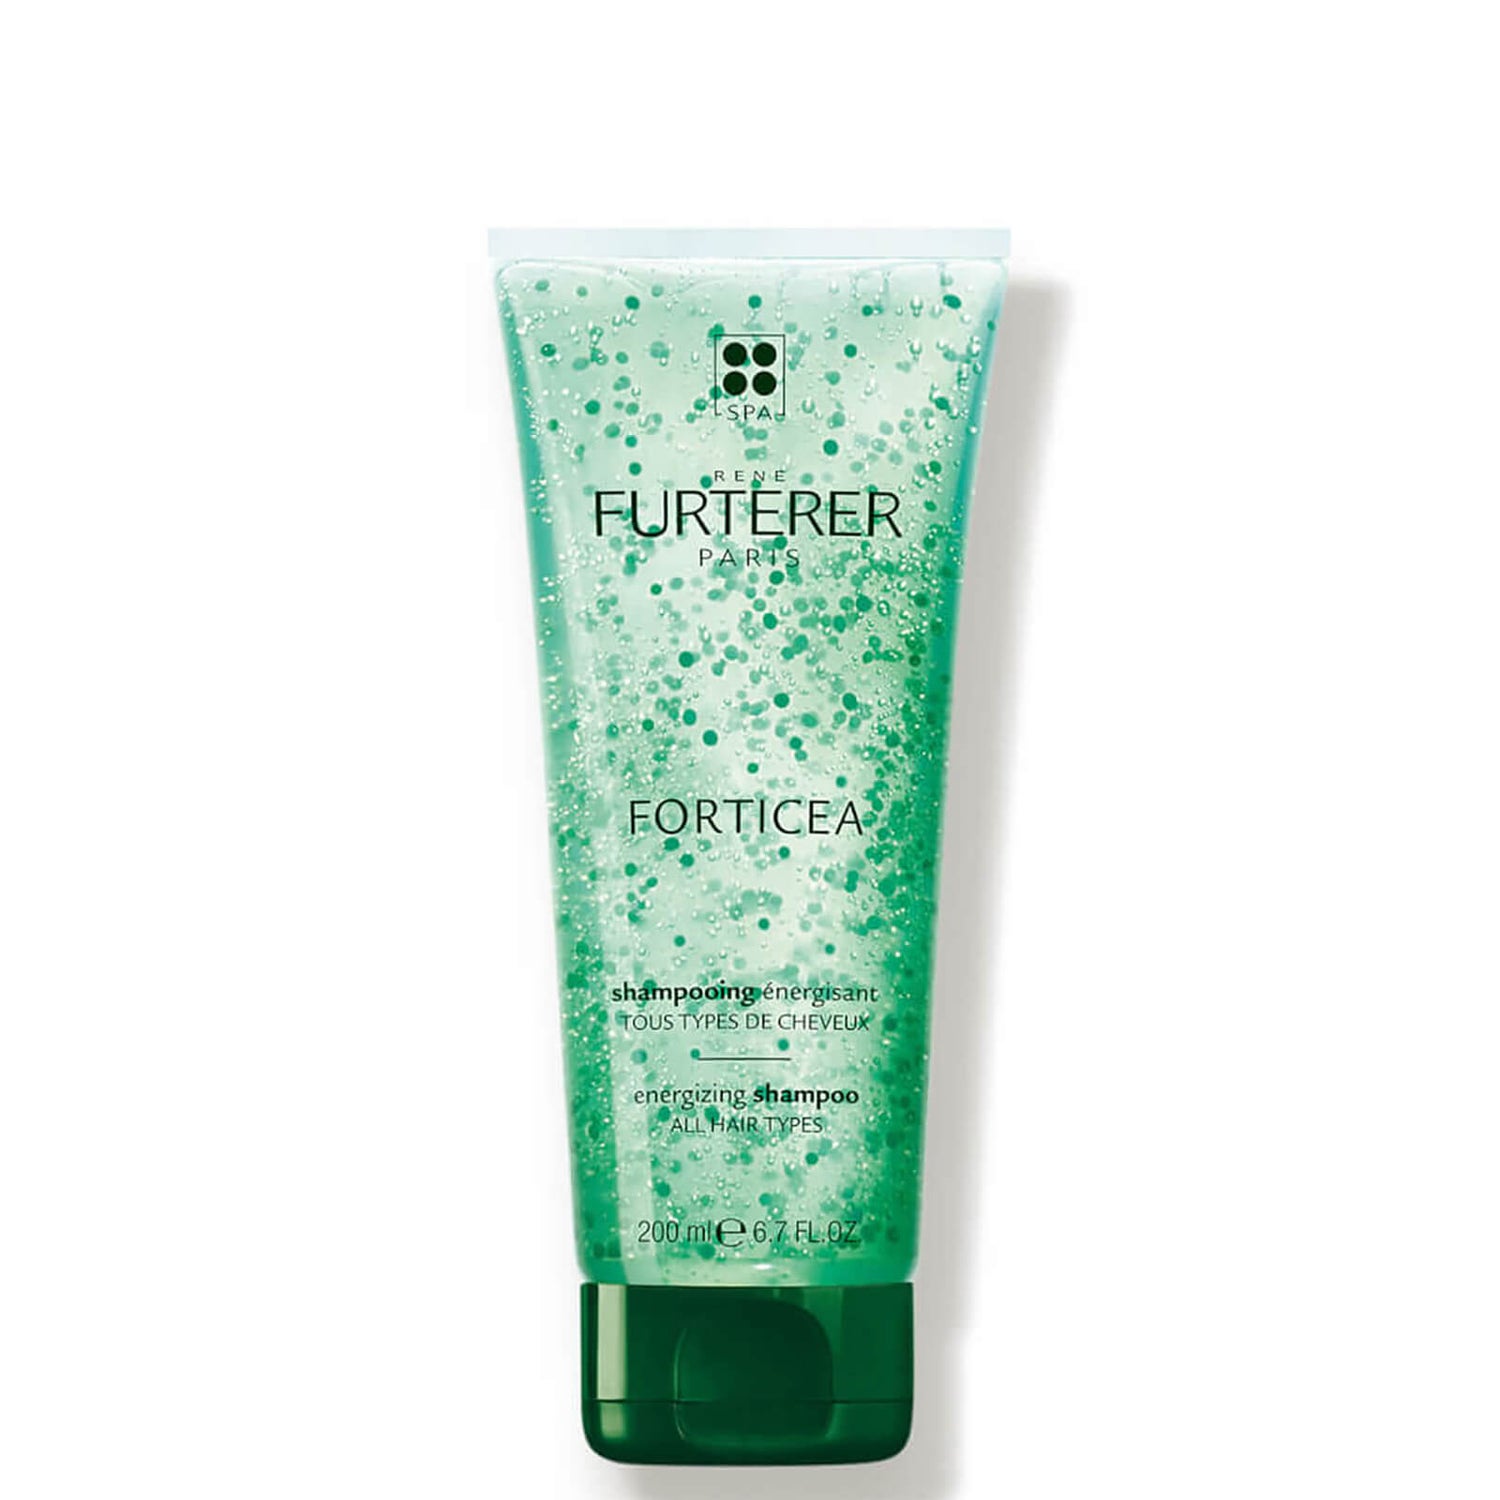 René Furterer Forticea Energizing Shampoo (6.7 fl. oz.)